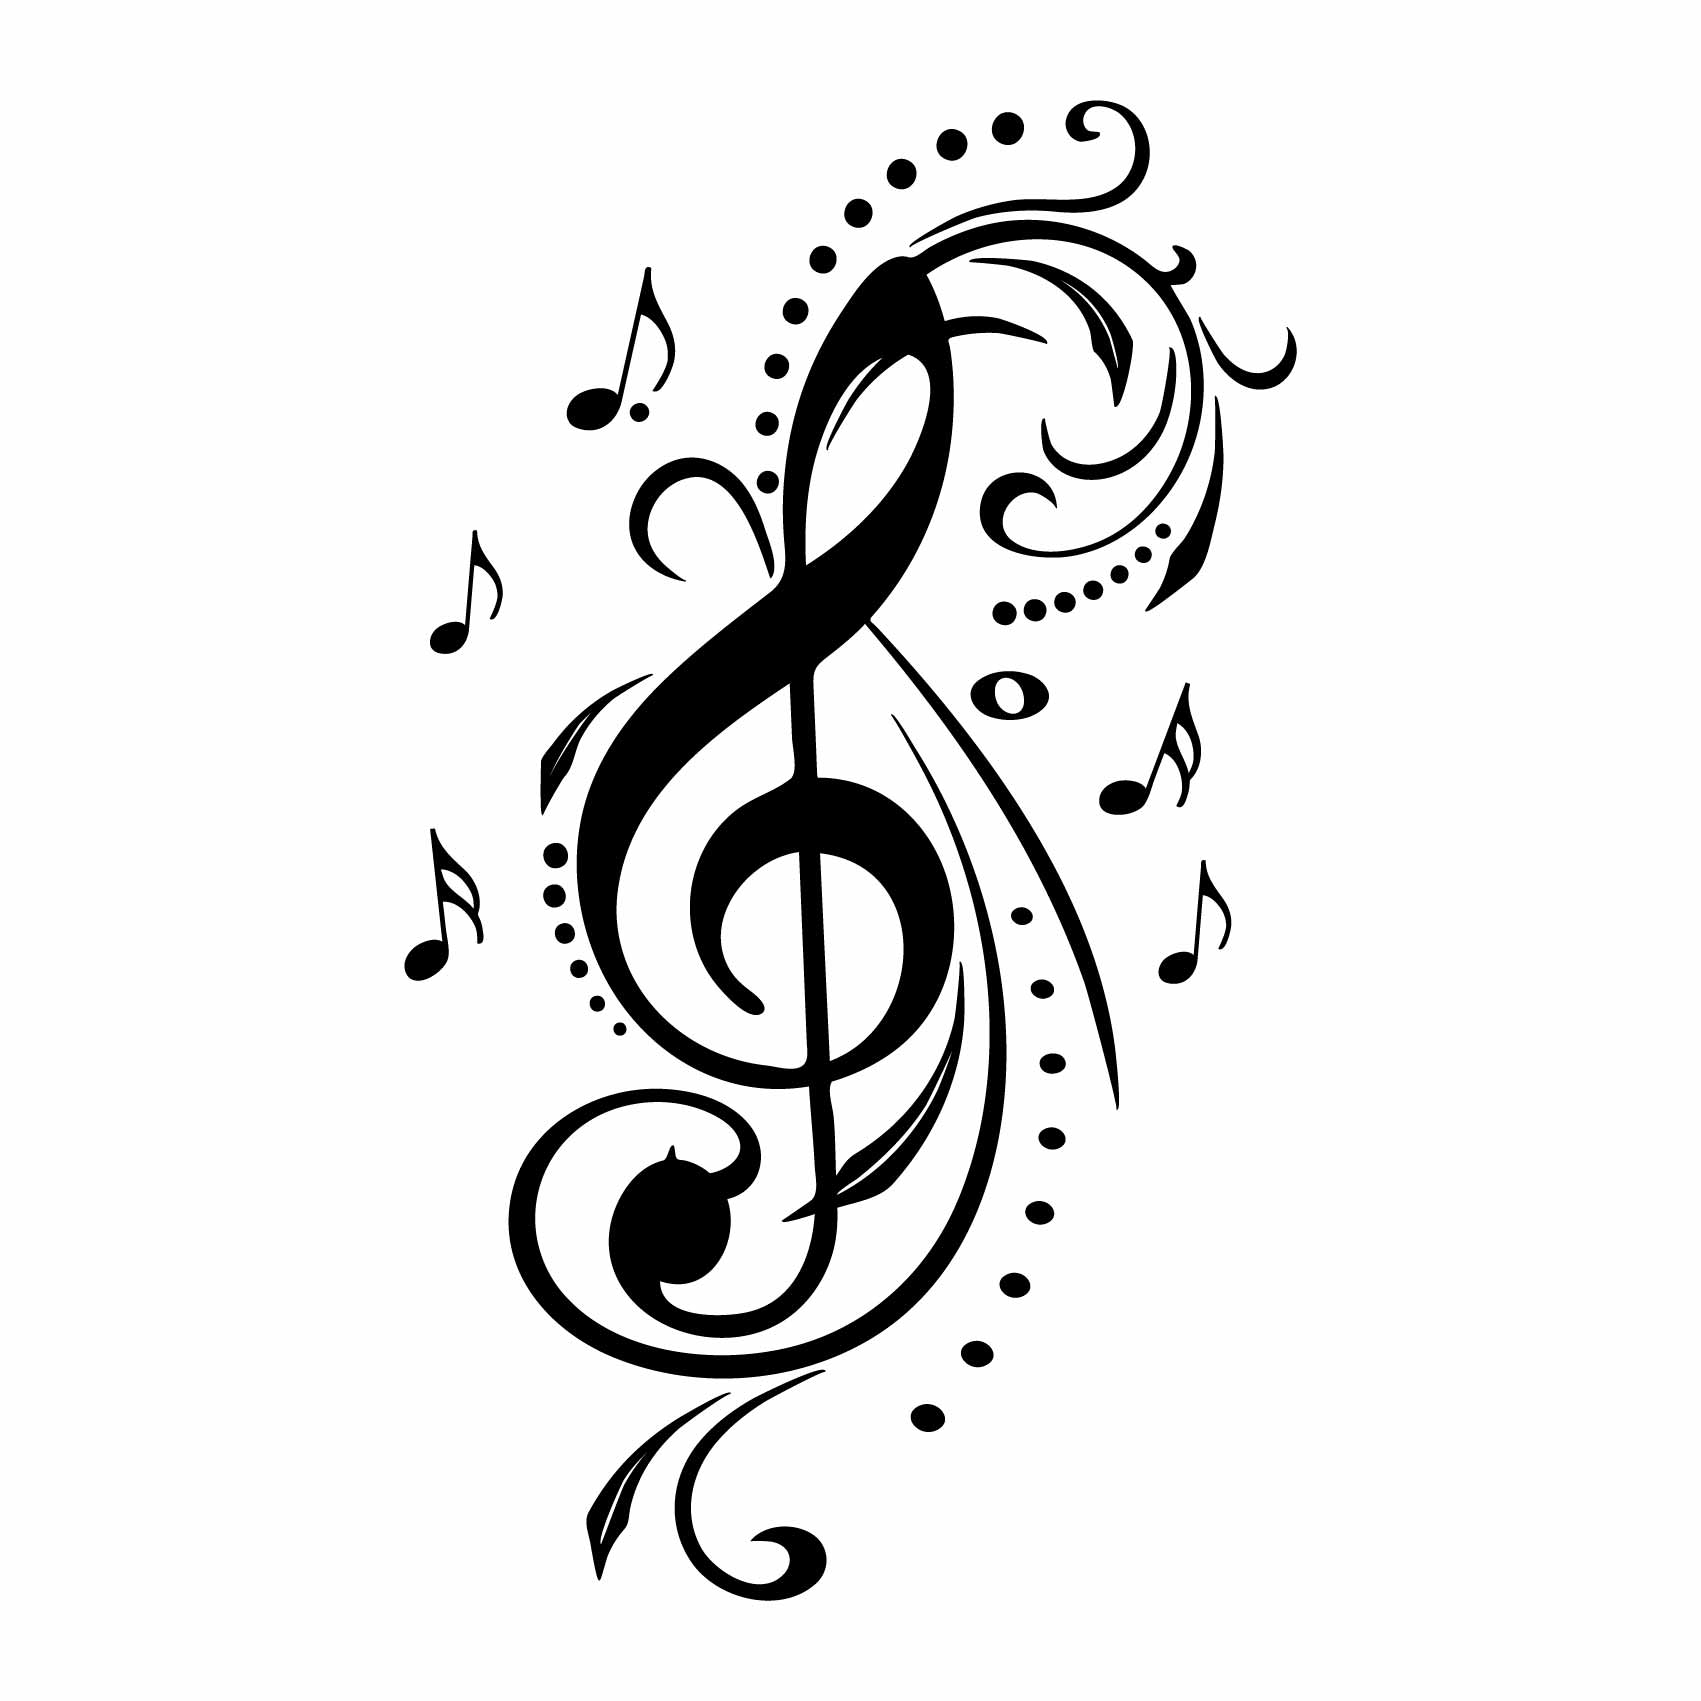 stickers-clef-de-sol-ref5musique-autocollant-muraux-musique-sticker-mural-musical-note-notes-deco-salon-chambre-adulte-ado-enfant-(2)